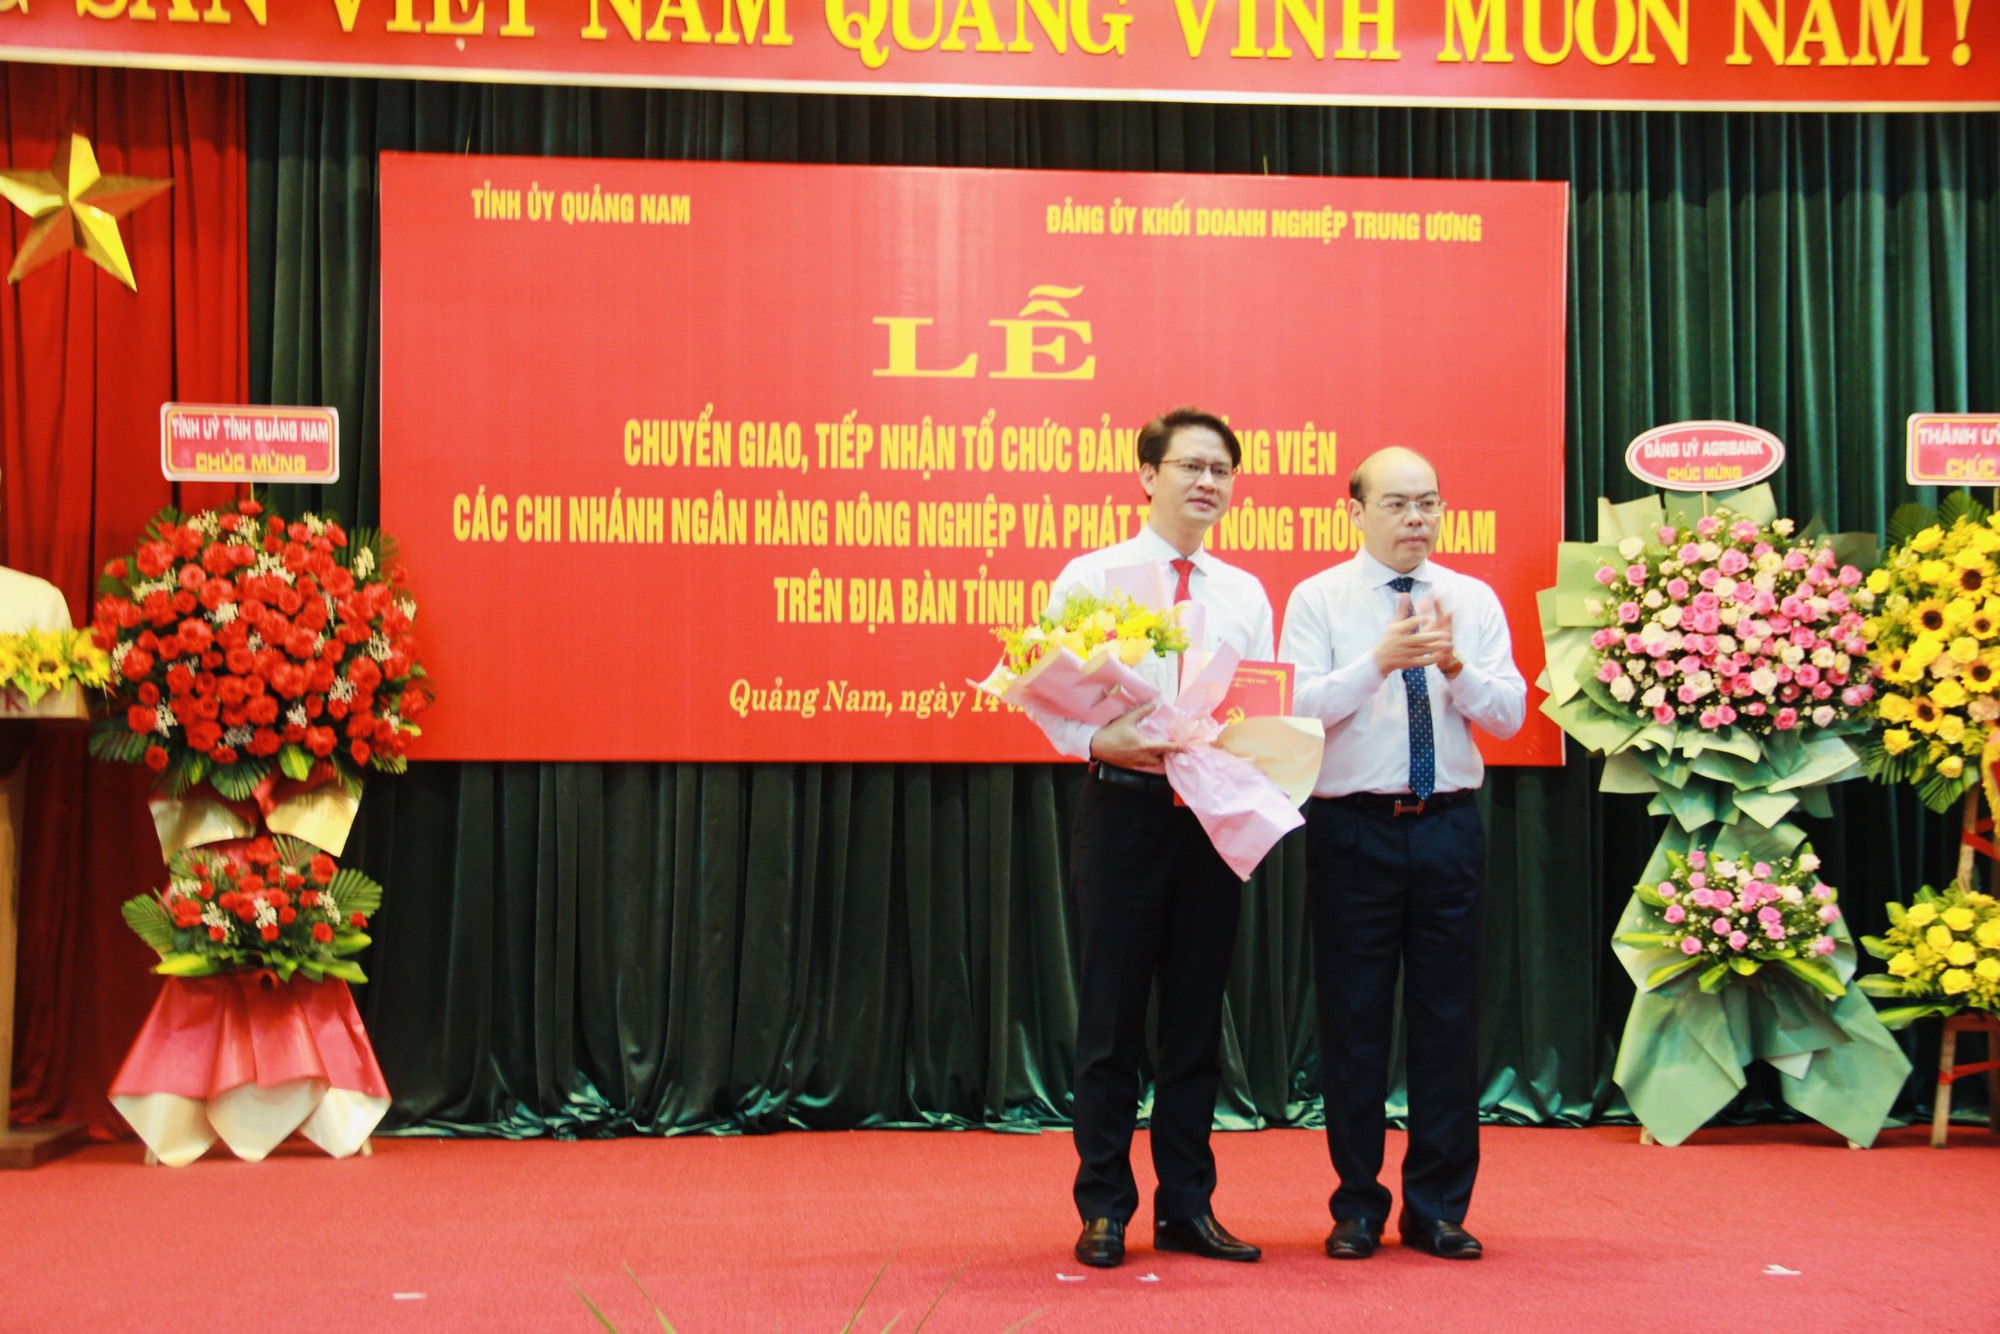 Lễ chuyển giao – tiếp nhận tổ chức đảng, đảng viên trong các Chi nhánh Agribank trên địa bàn tỉnh Quảng Nam - Ảnh 4.